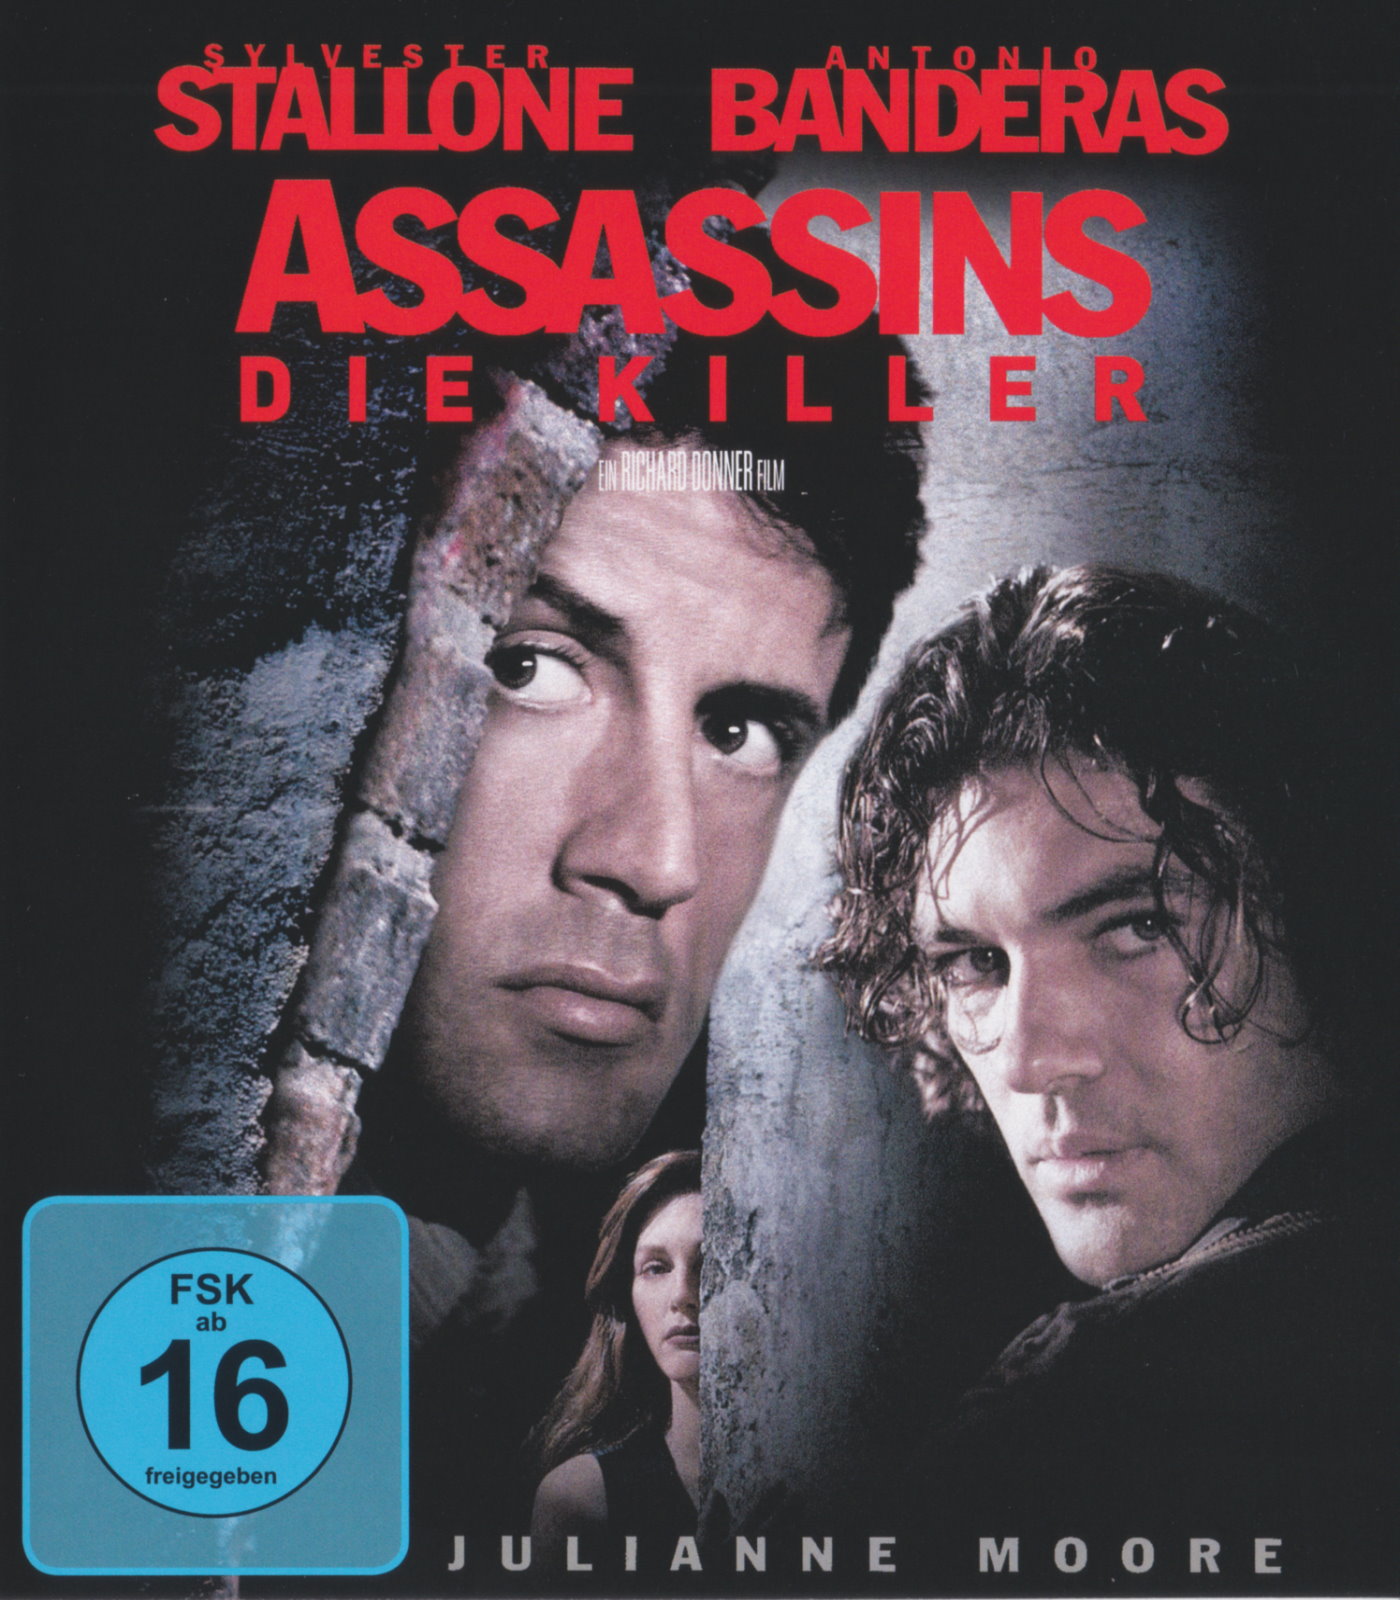 Cover - Assassins - Die Killer.jpg